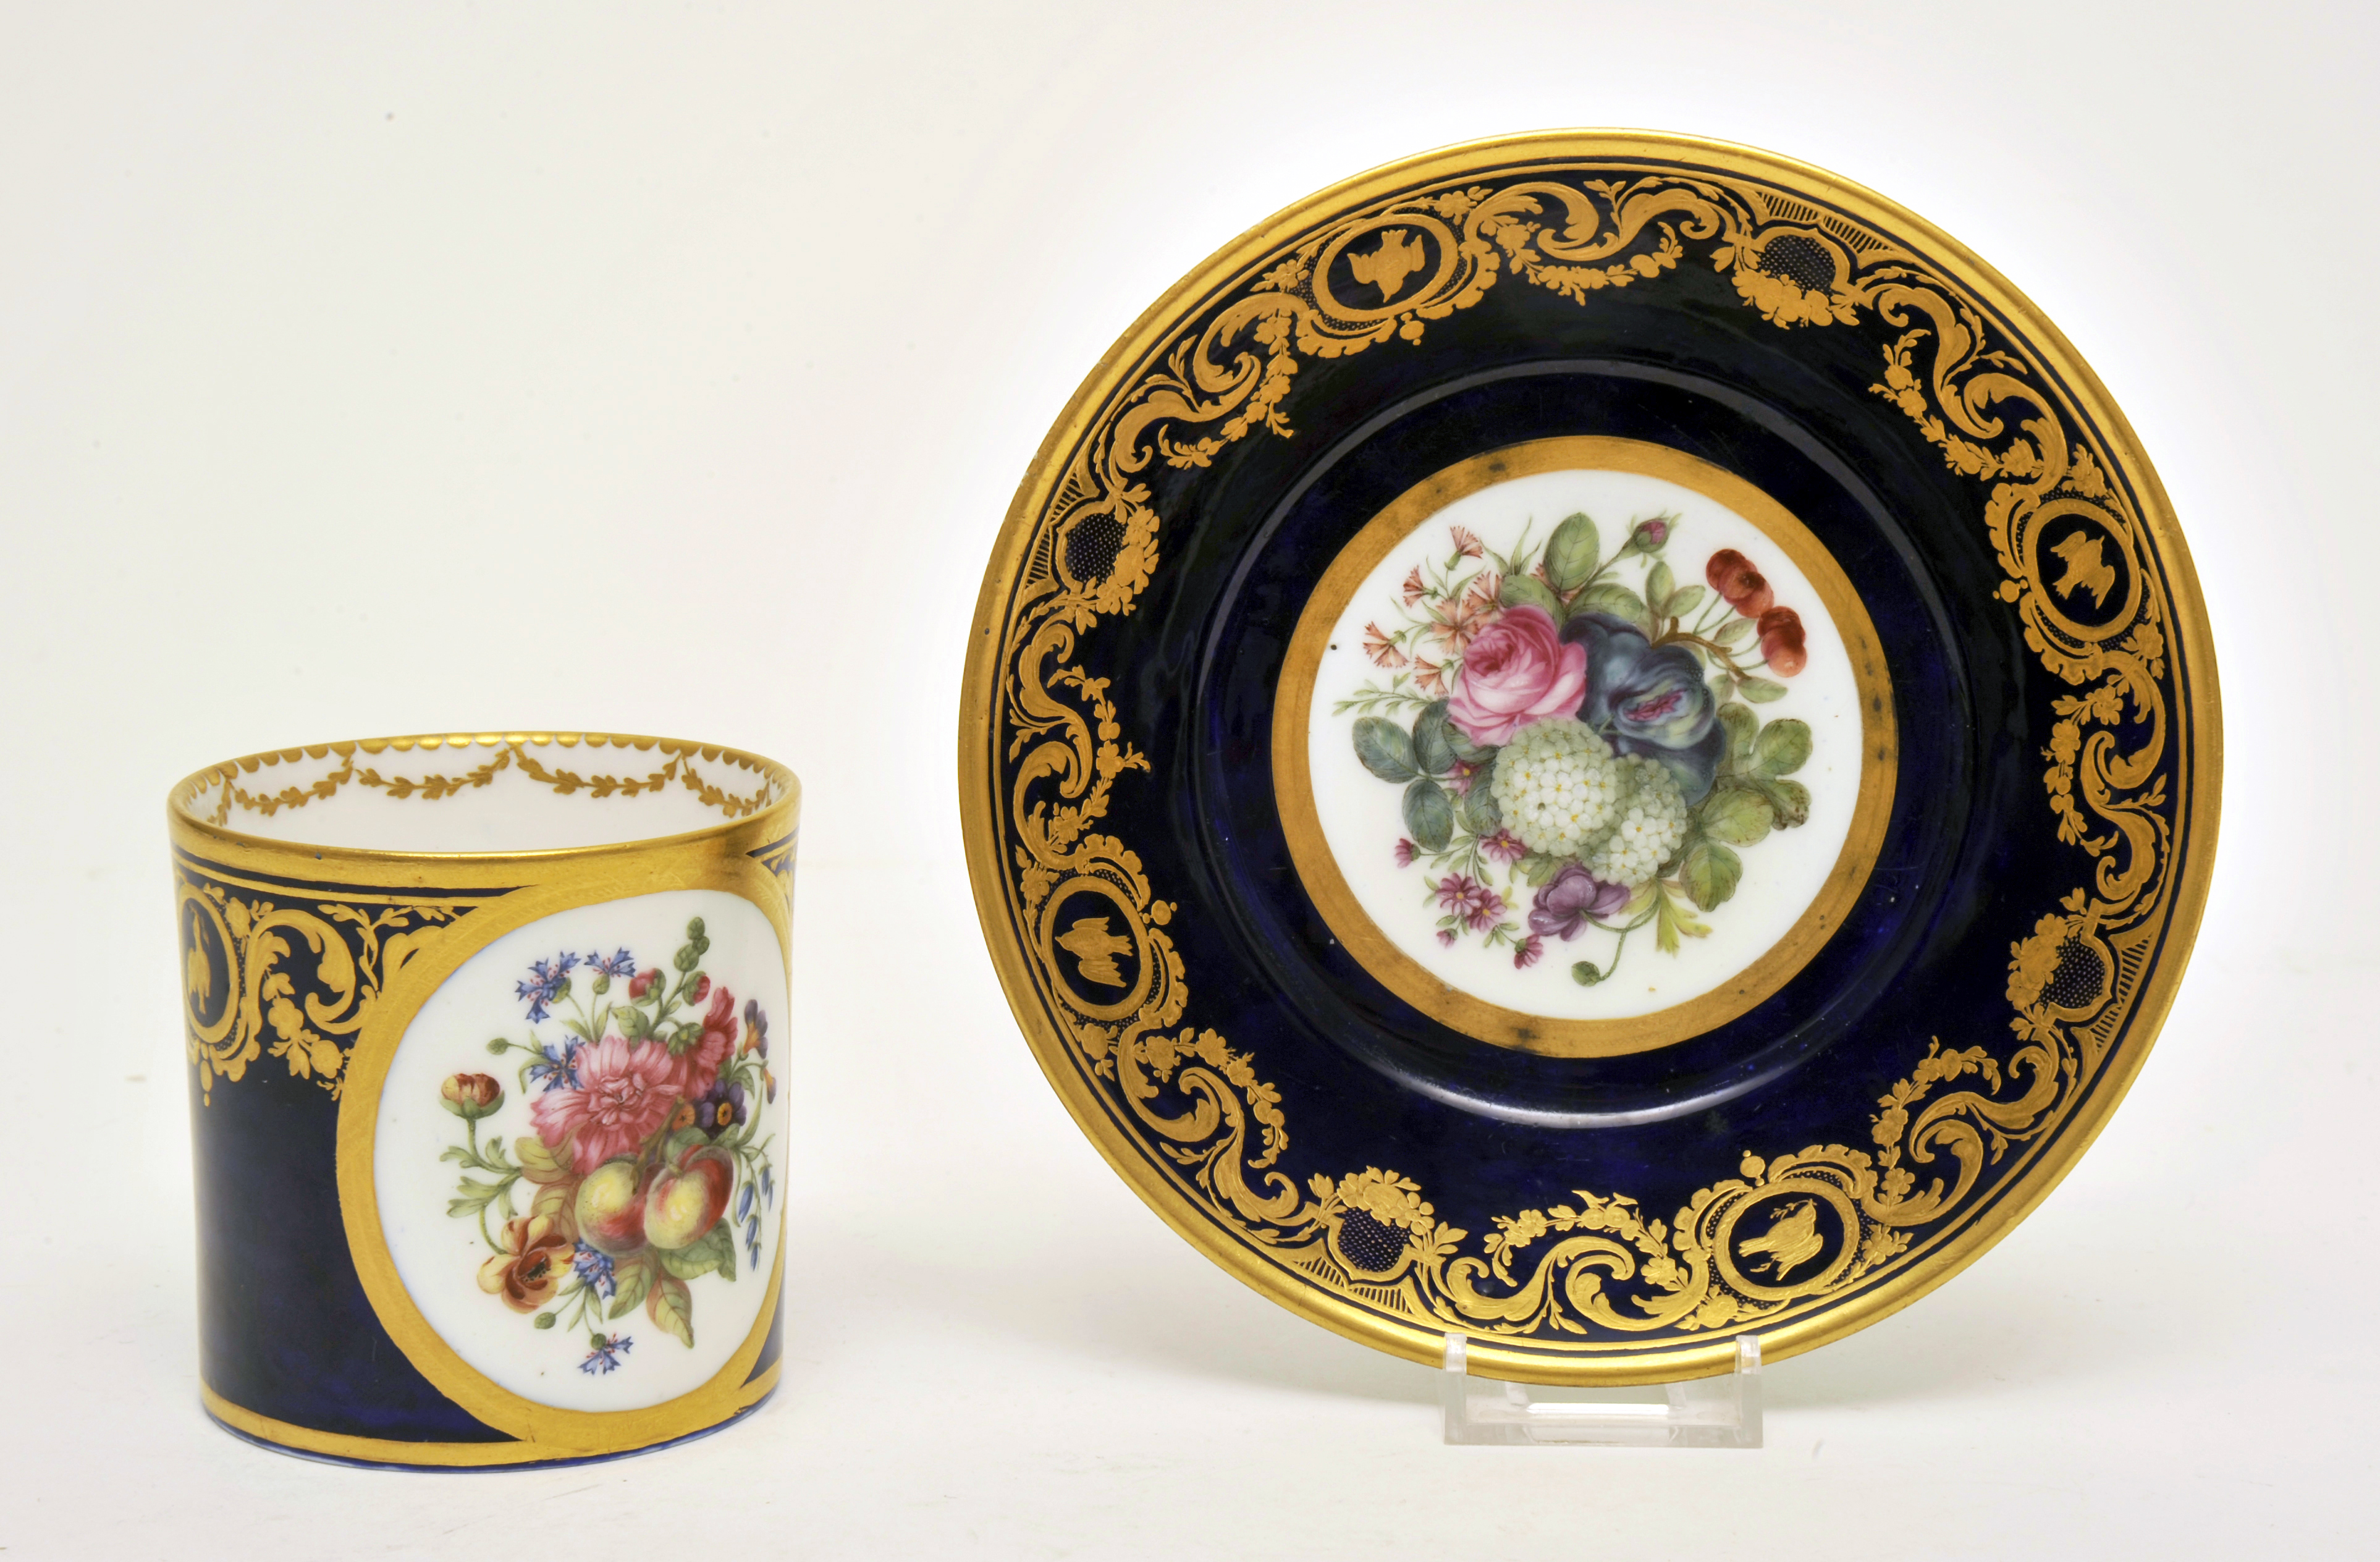 Фарфор 19 века. Севр фарфор 18 век. Фарфор тарелка Севр Франция 19 век. Sevres Porcelain.